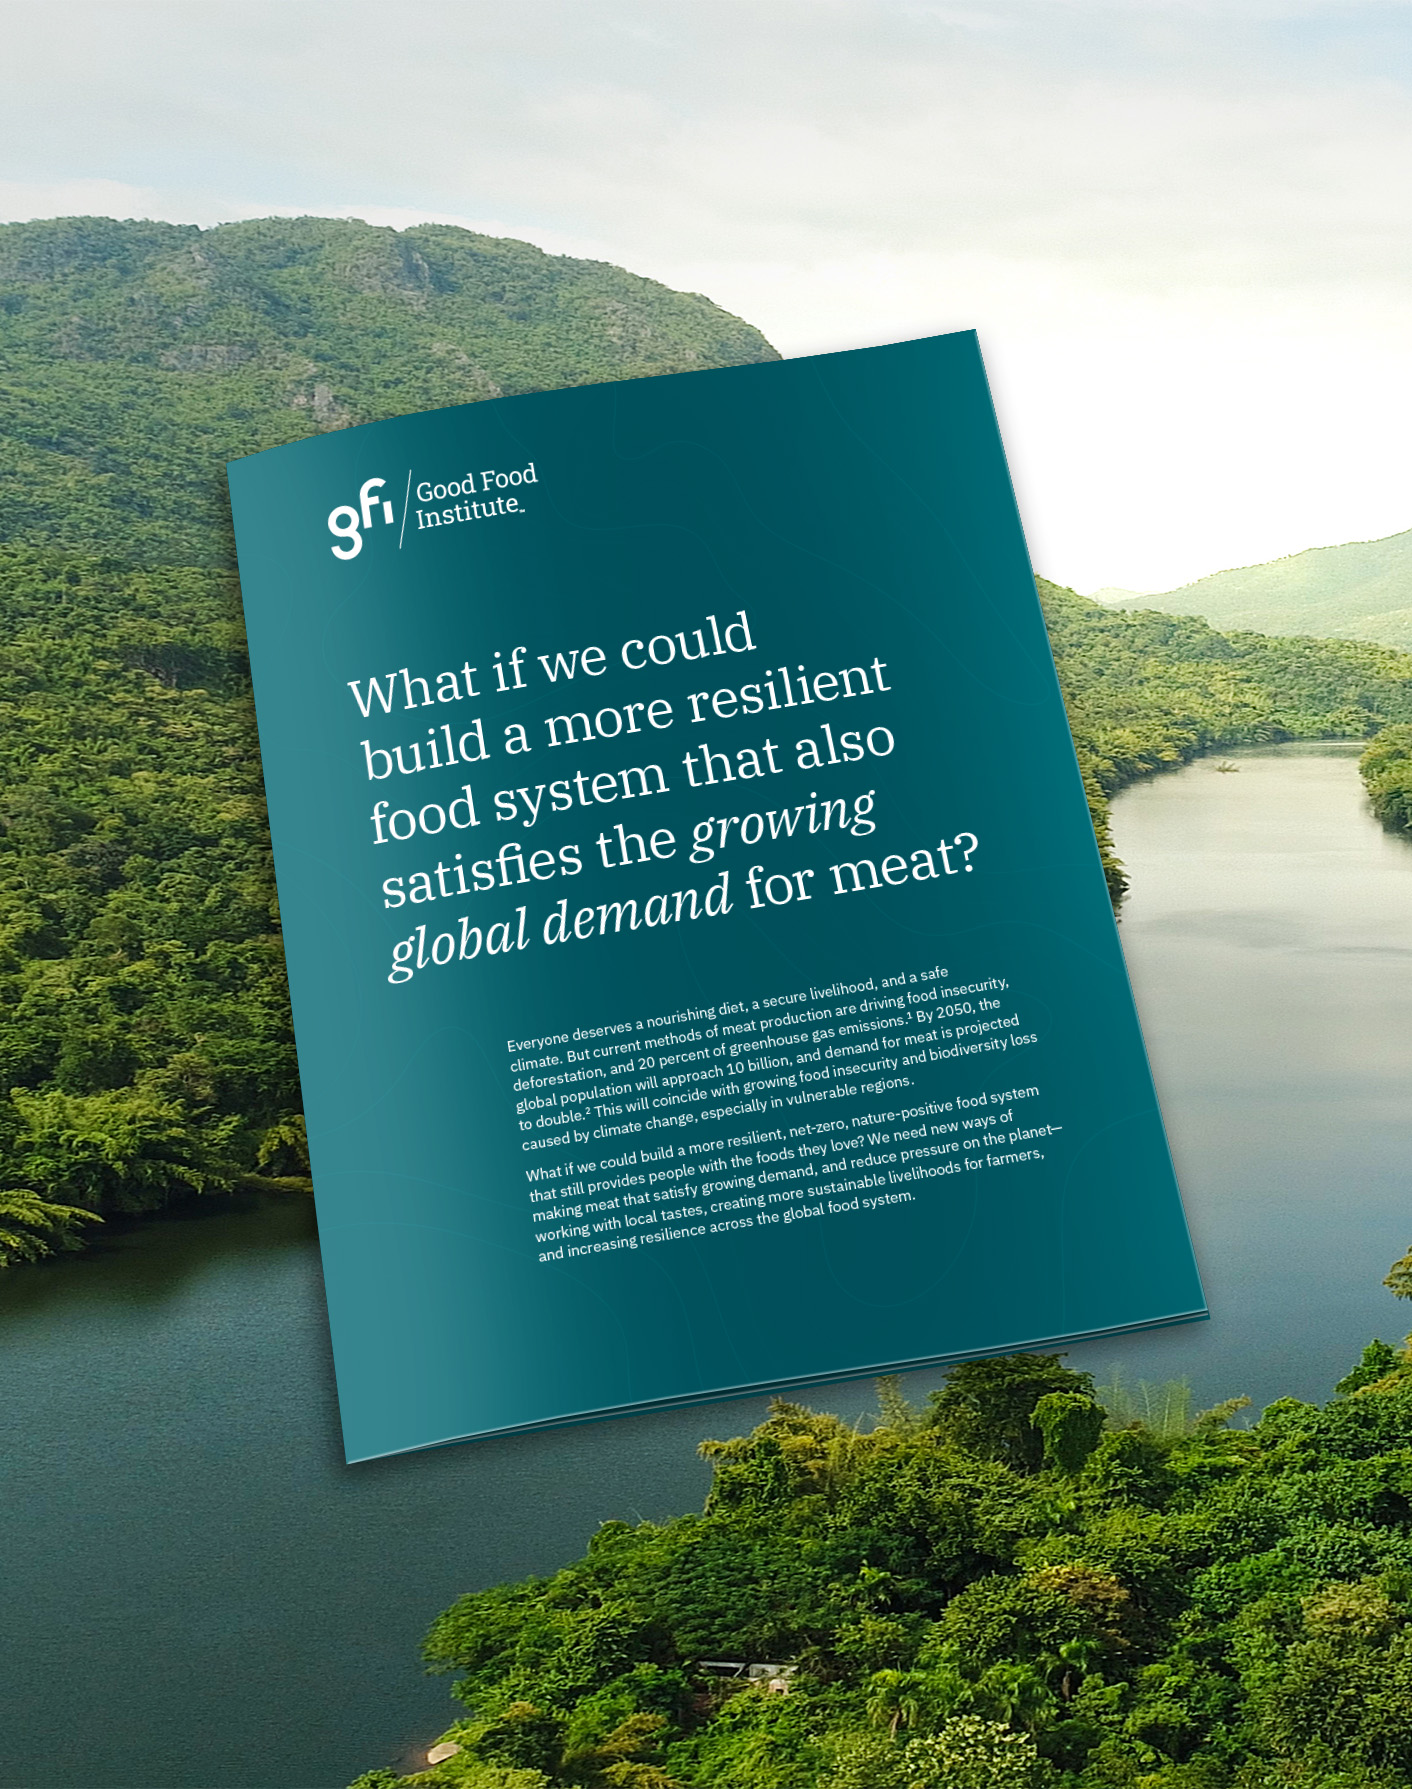 Case study flyer over a natural landscape background